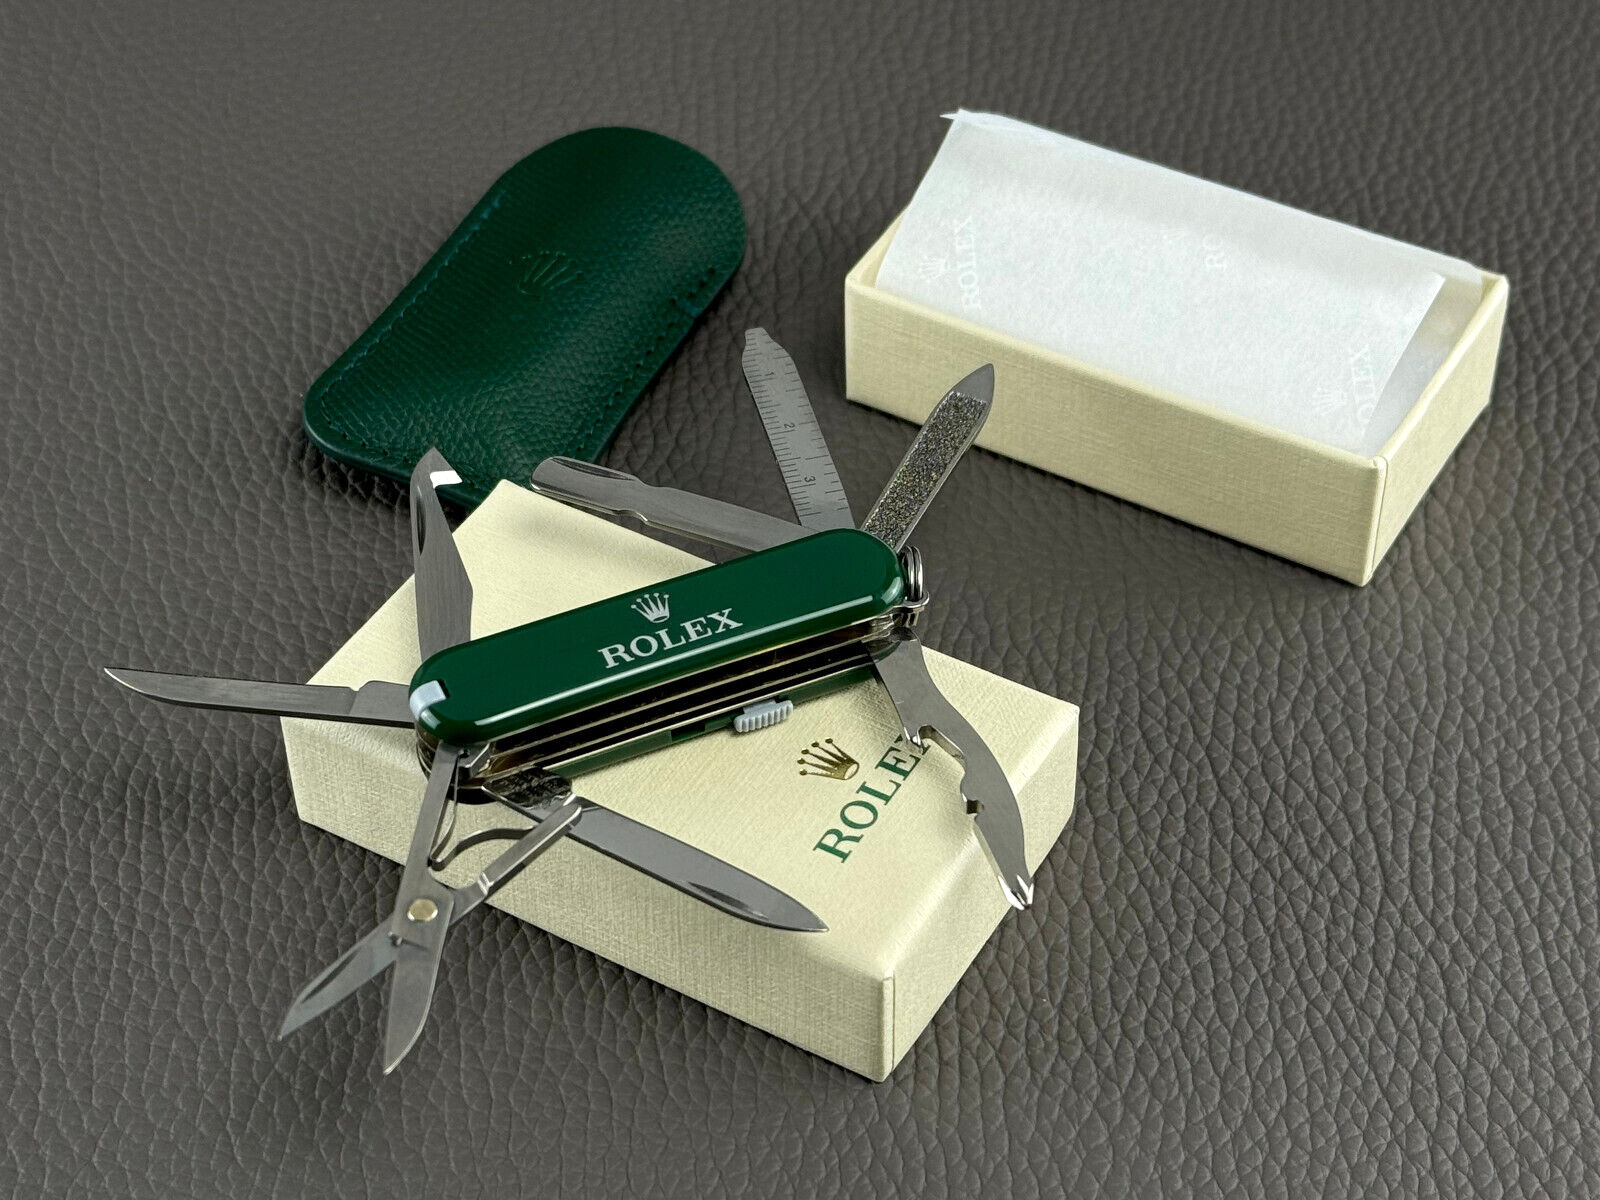  Rolex Victorinox Taschenmesser Messer Pocket Knife + Lederetui *NEU NEW*